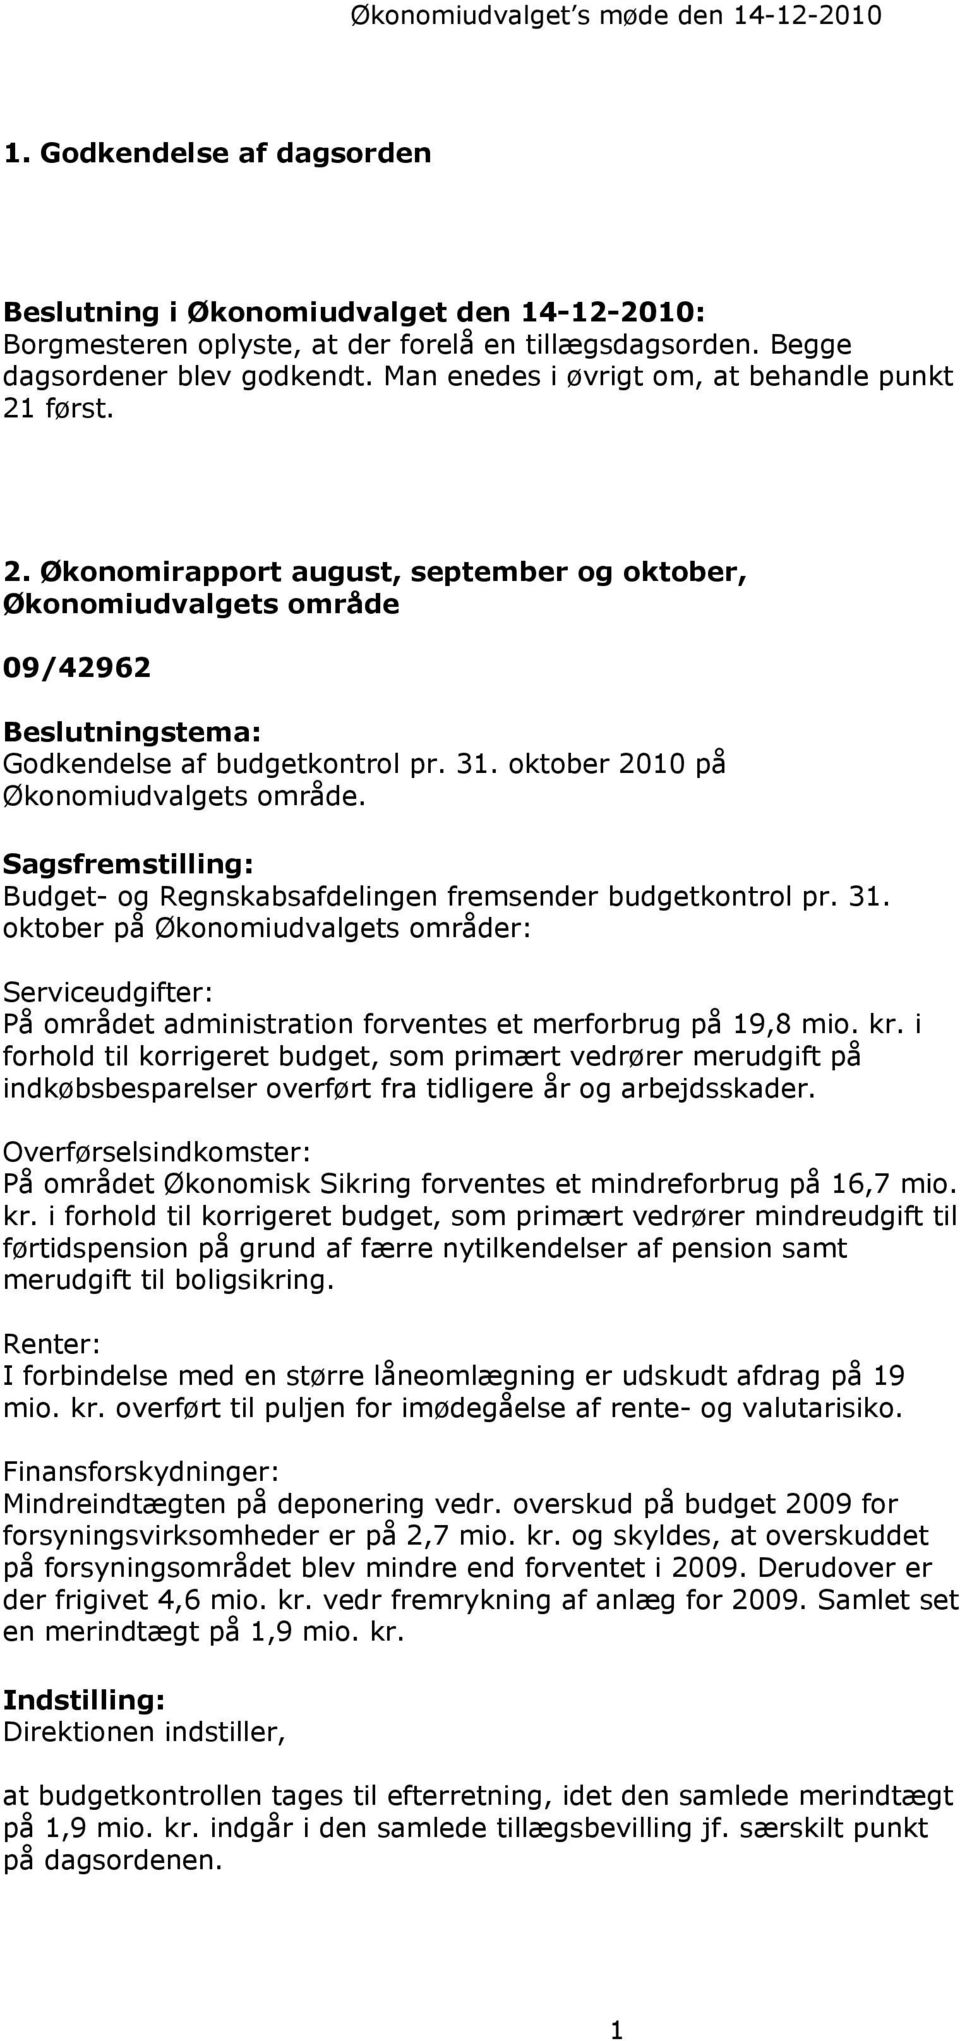 Budget- og Regnskabsafdelingen fremsender budgetkontrol pr. 31. oktober på Økonomiudvalgets områder: Serviceudgifter: På området administration forventes et merforbrug på 19,8 mio. kr.